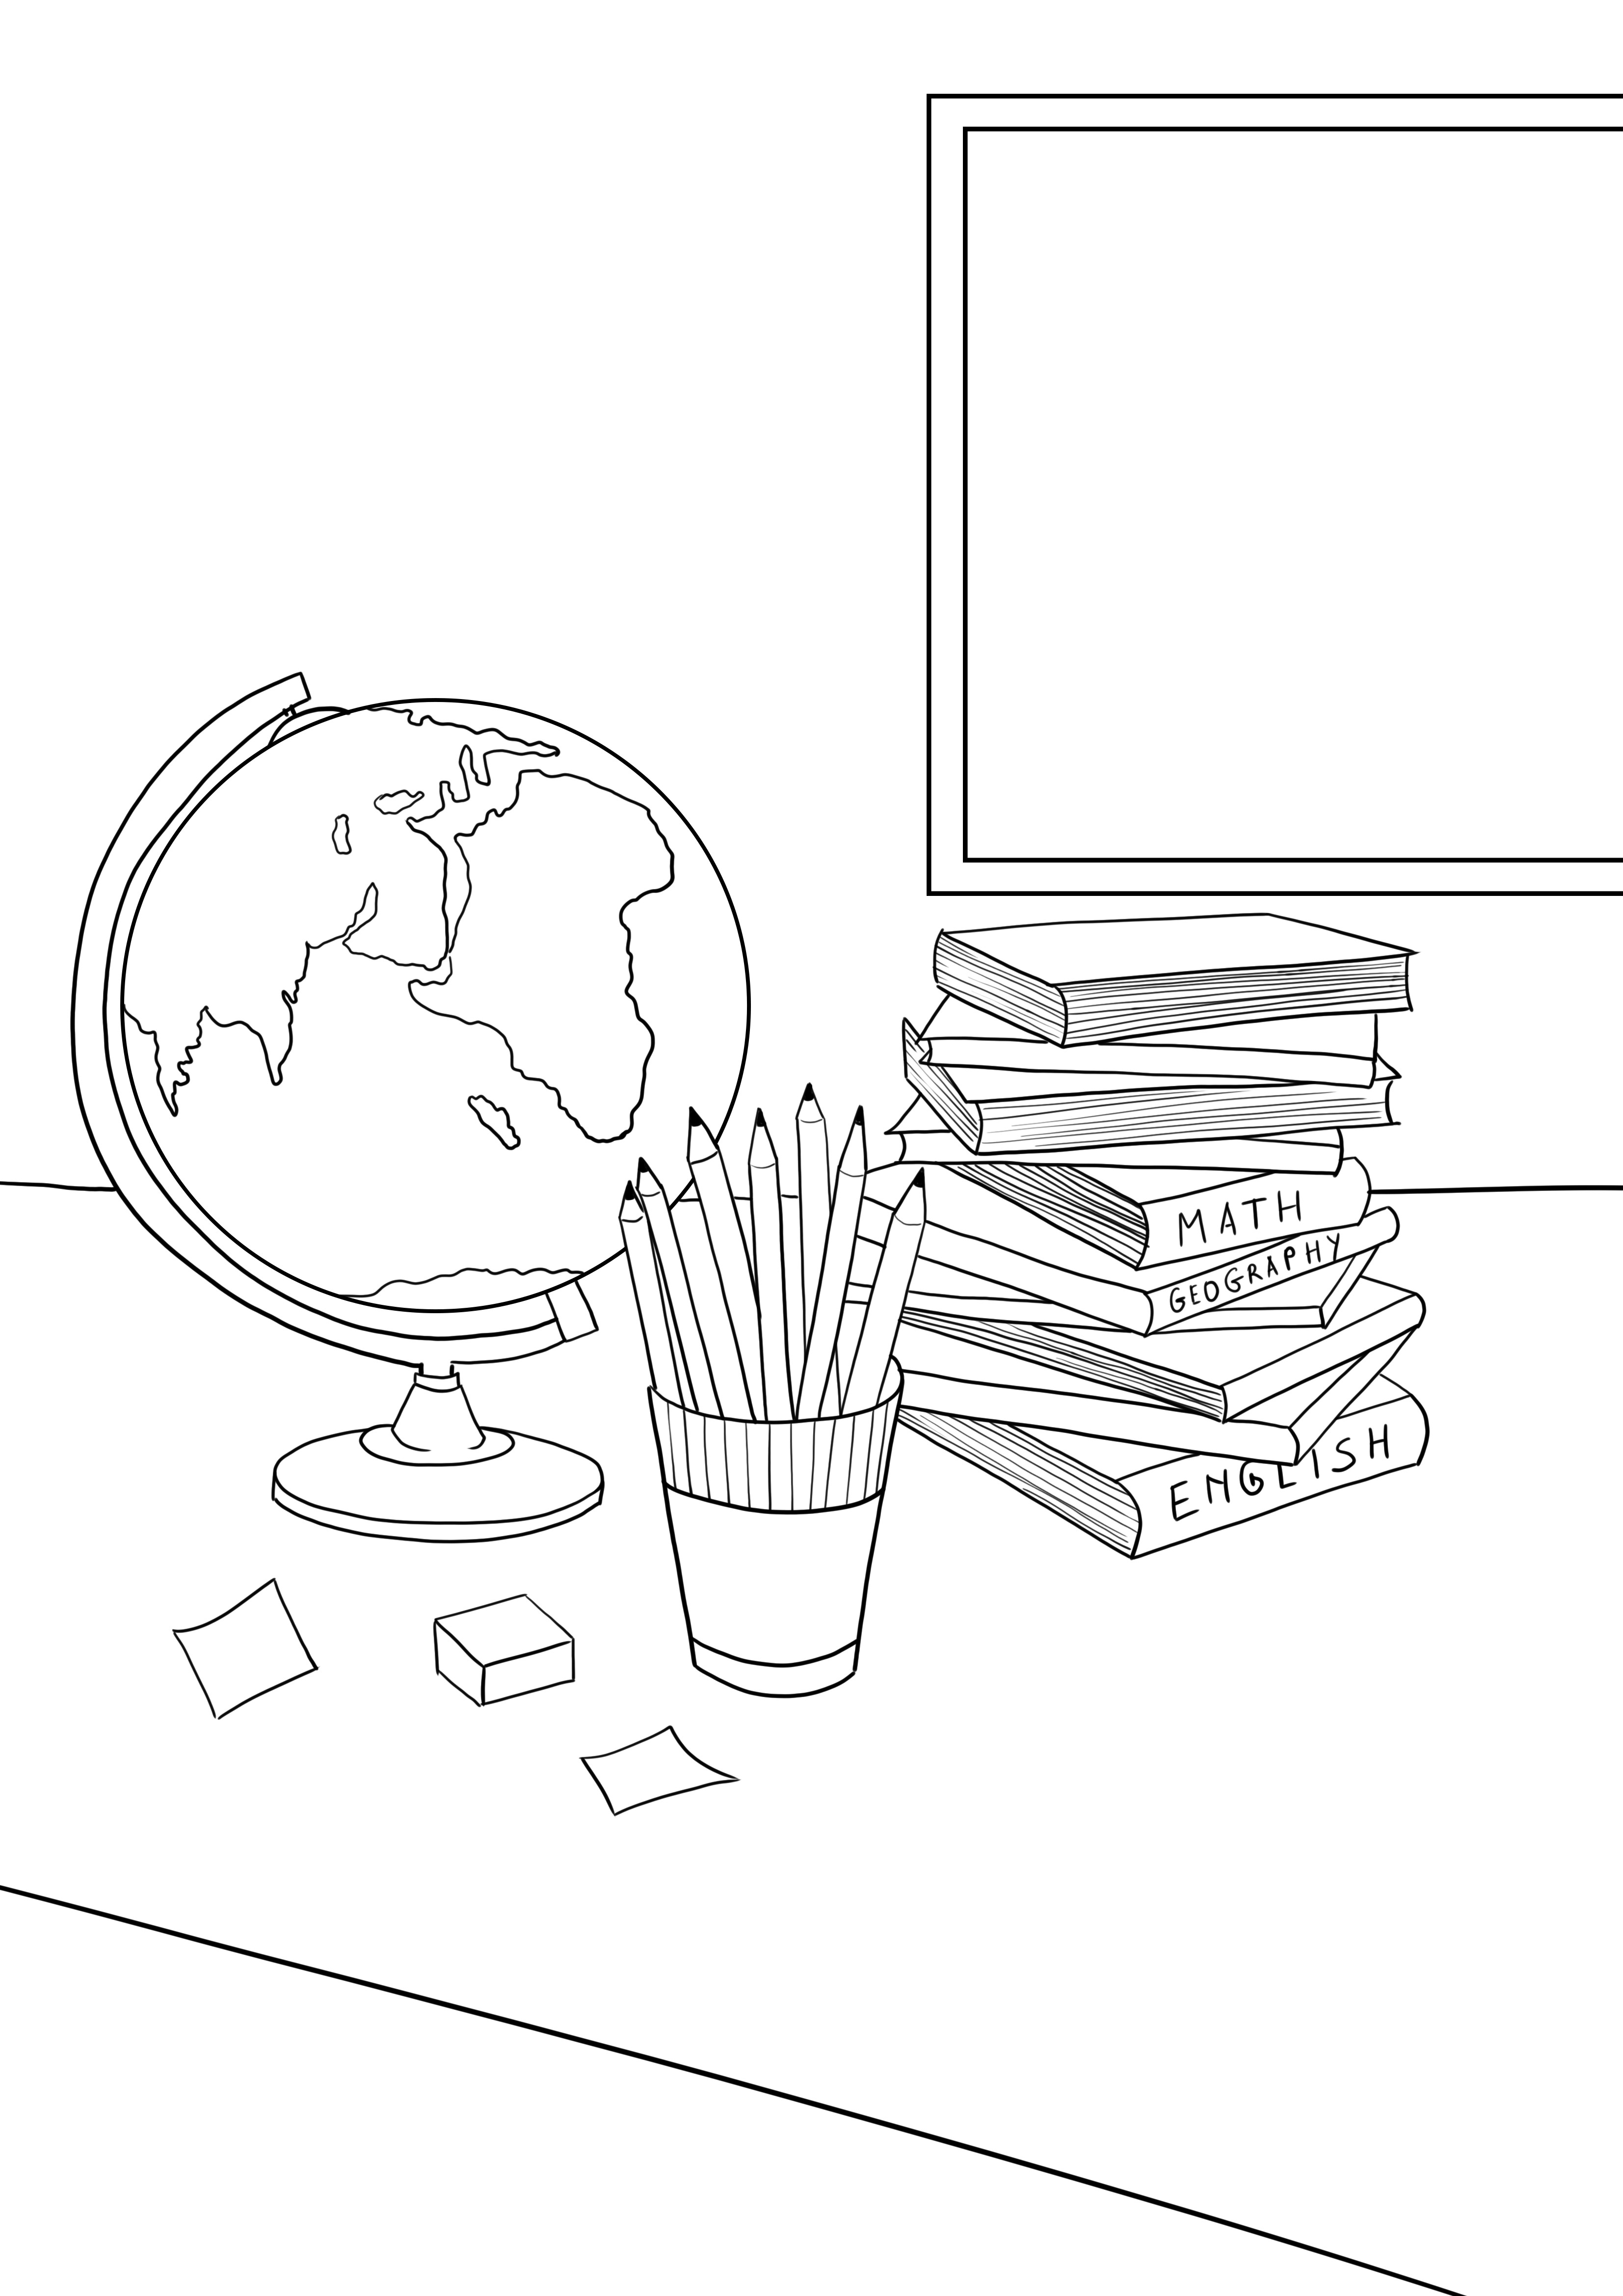 Libri scolastici-matite-globo stampabili gratis per bambini di tutte le età